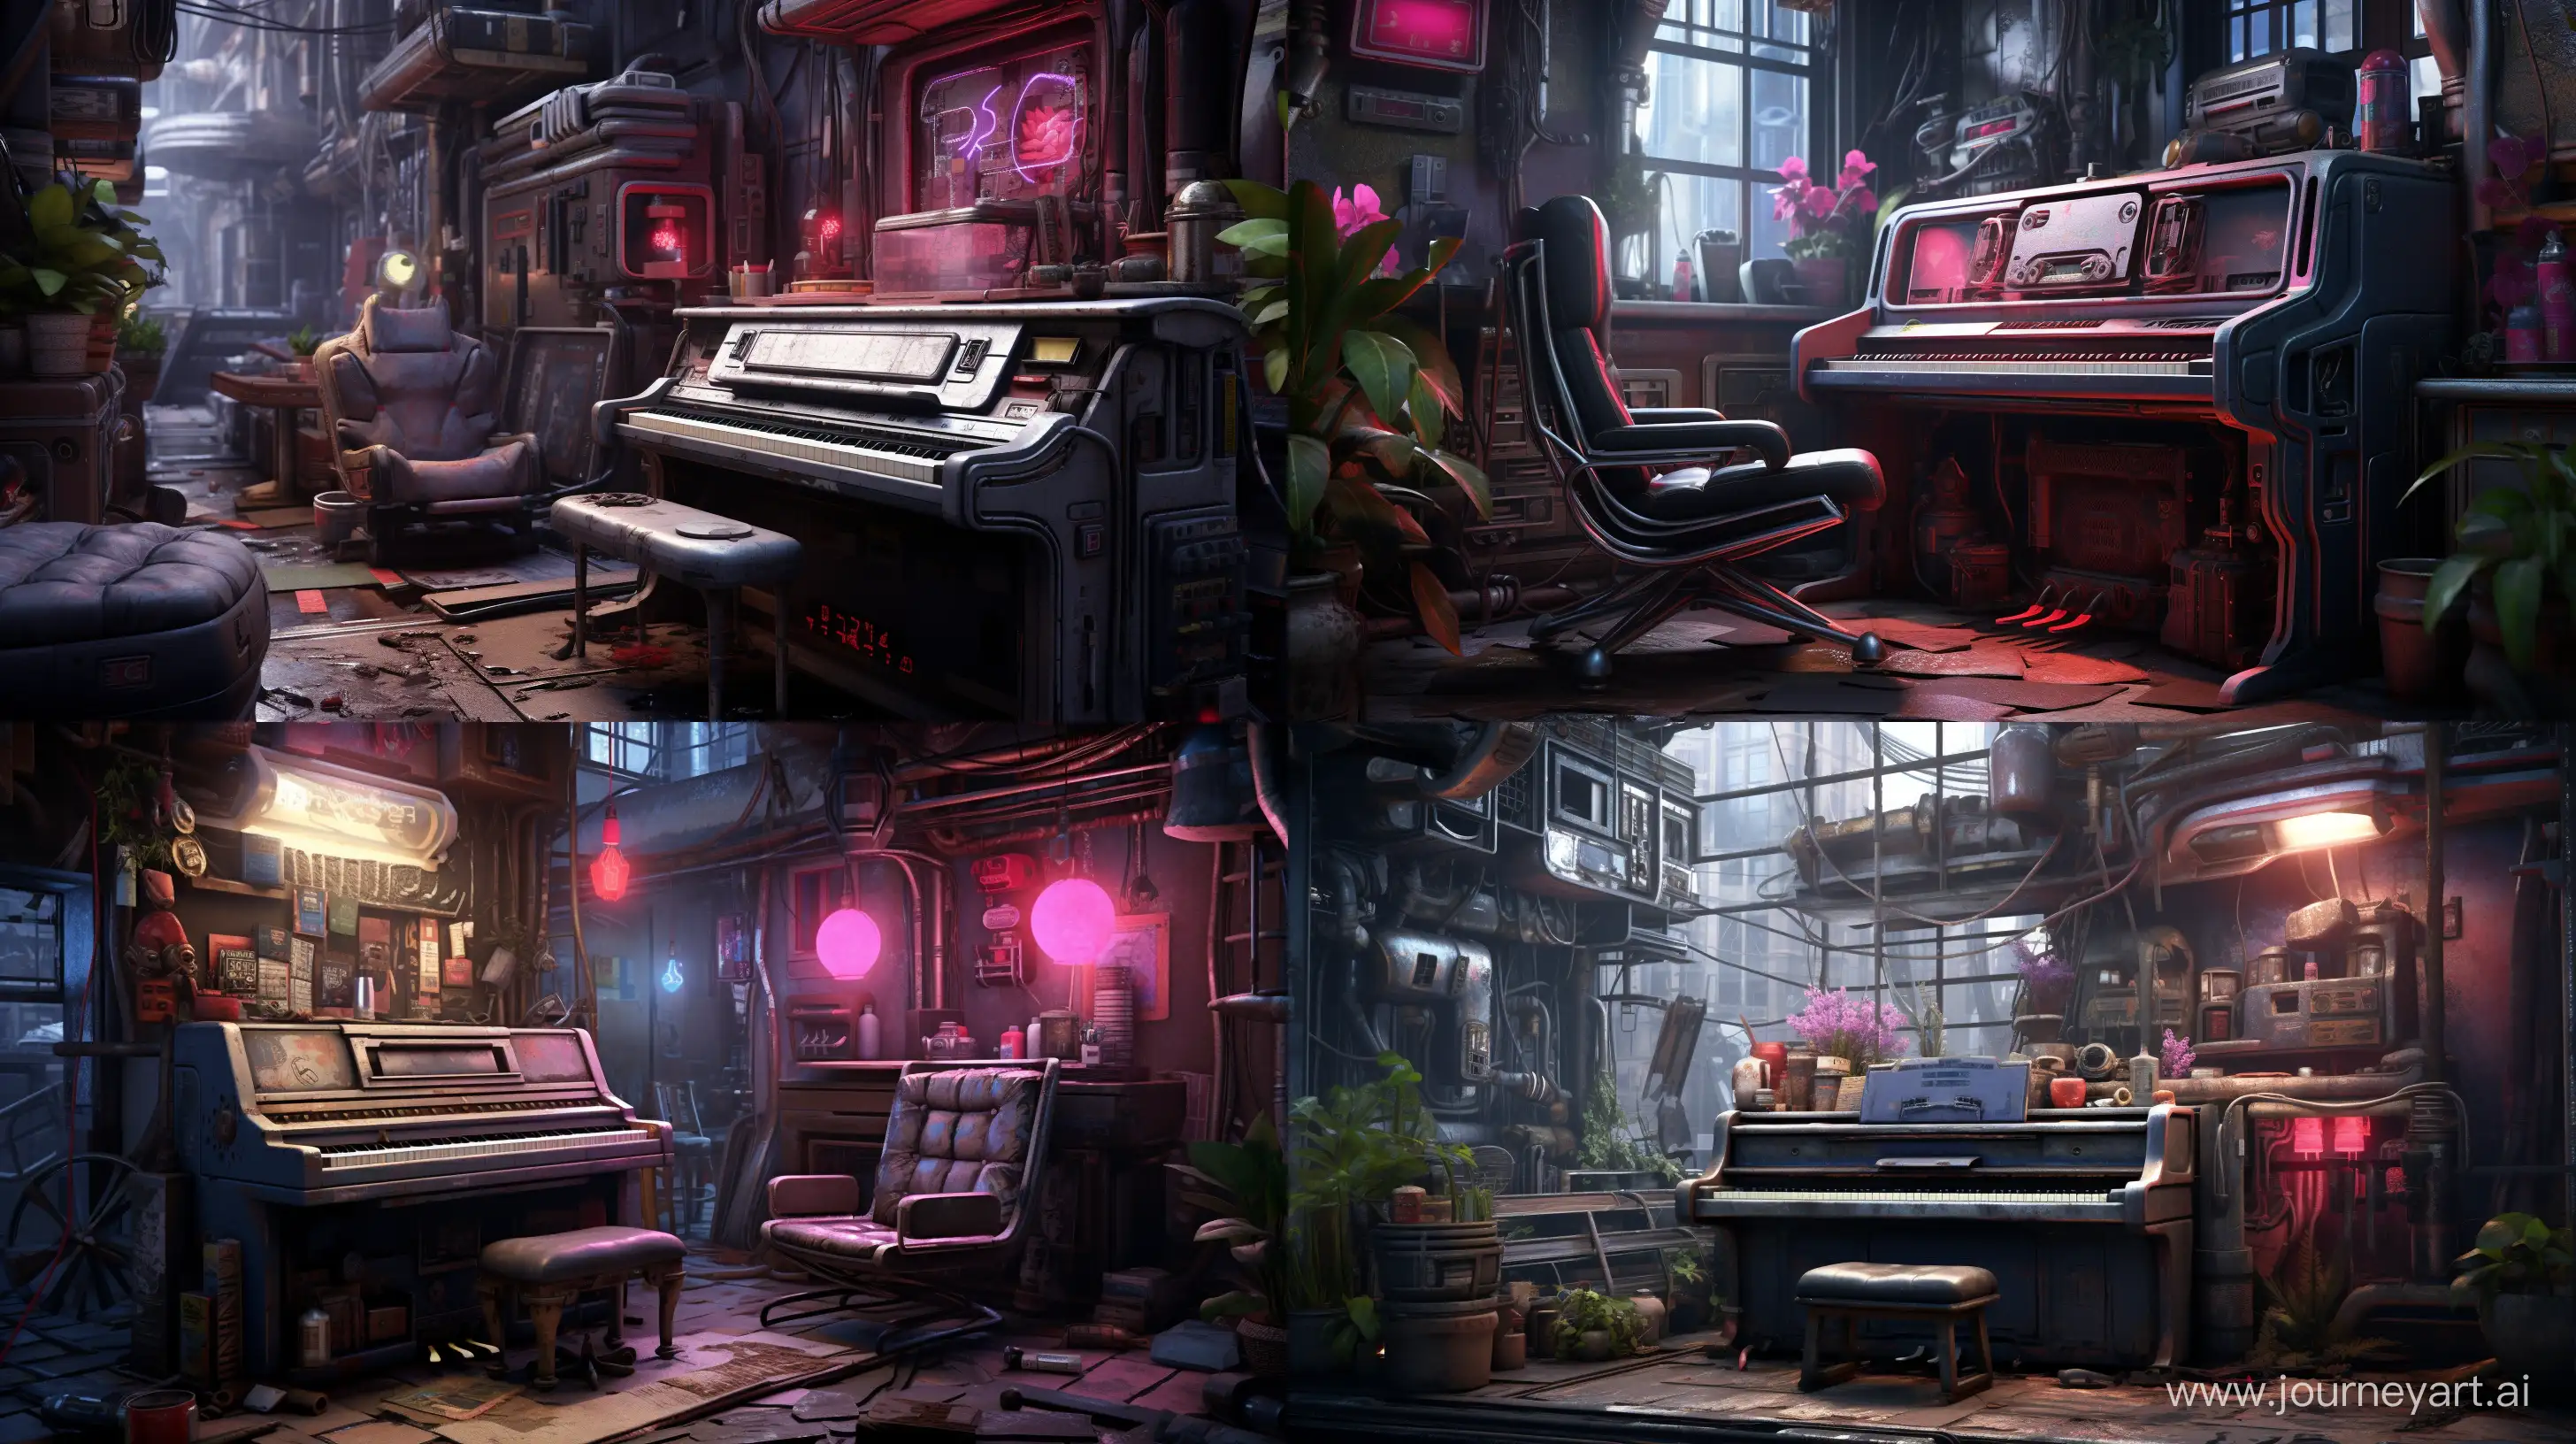 Futuristic-Cyberpunk-Piano-in-a-Stylish-Cyberpunk-Room